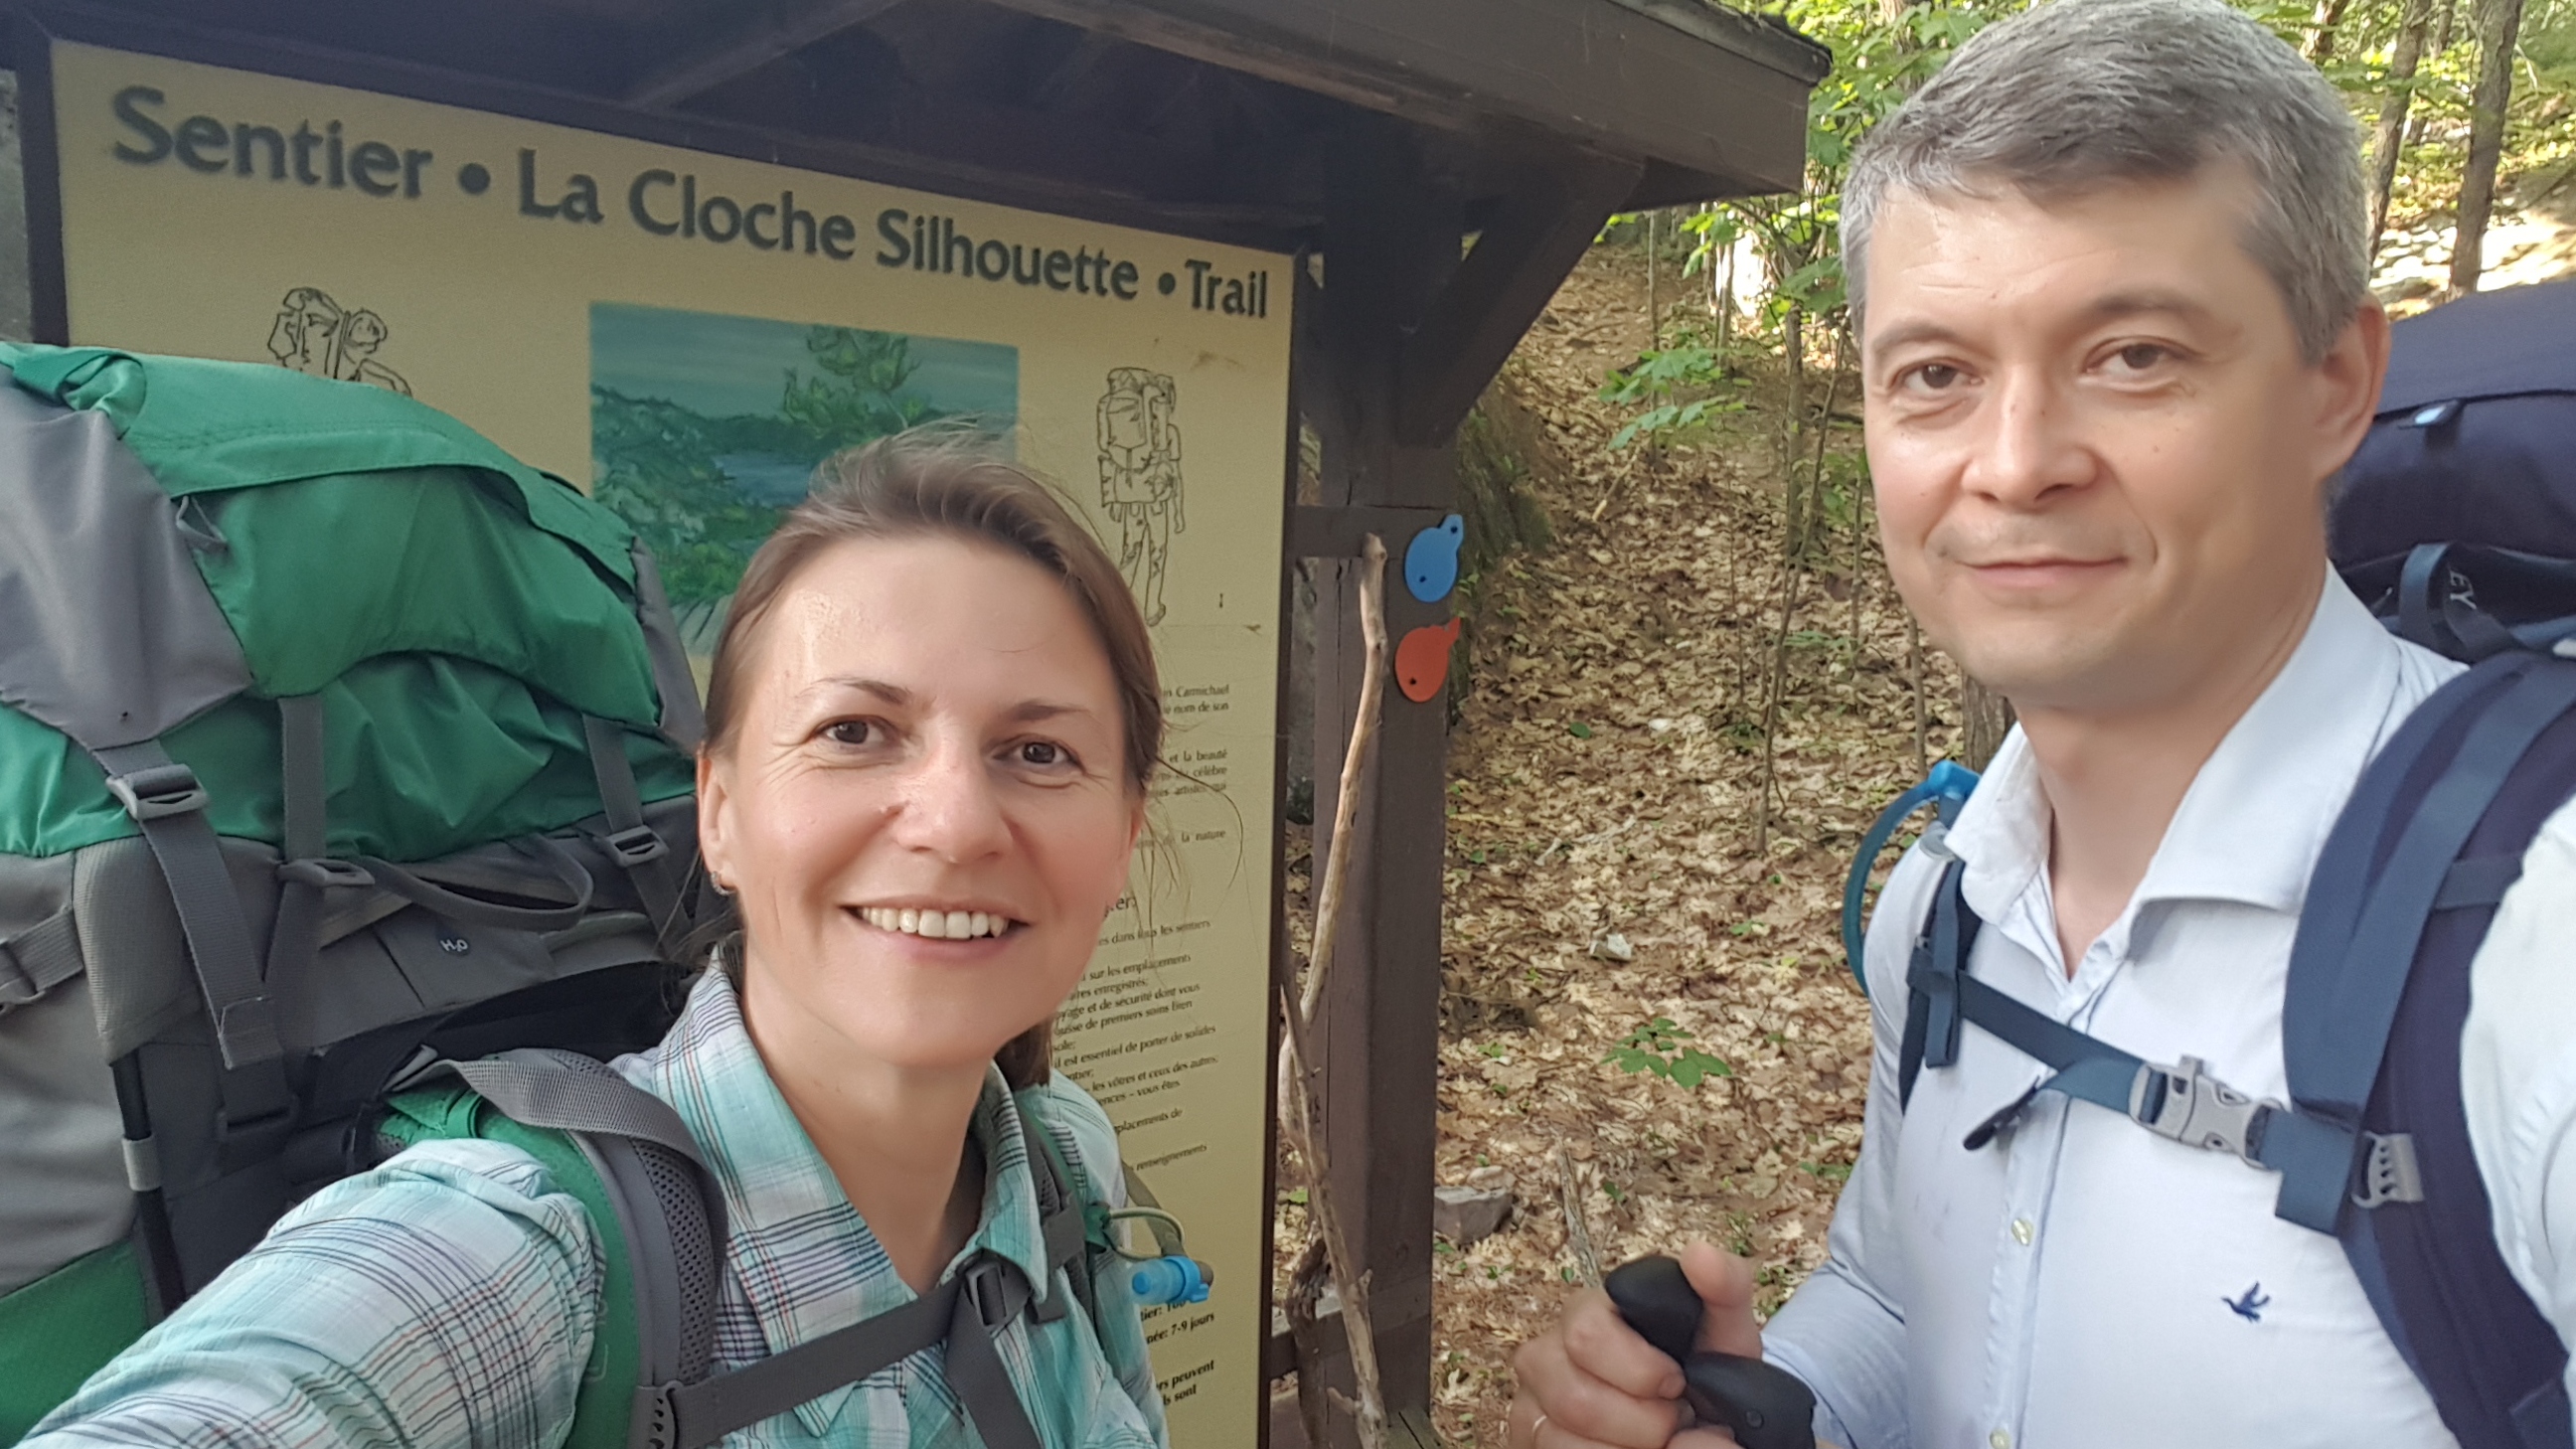 La Cloche Silhouette Trail in Killarney